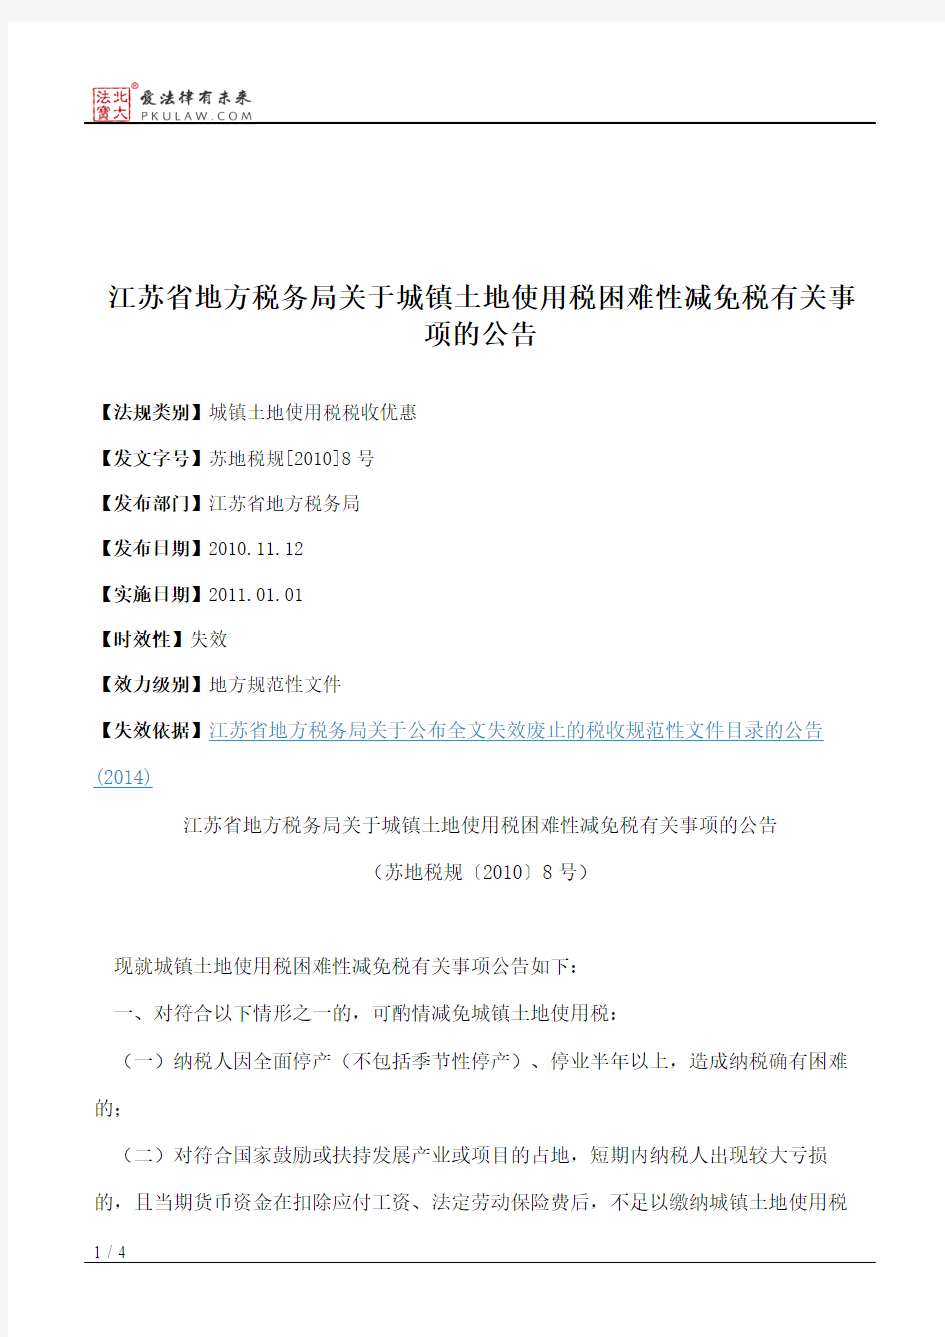 江苏省地方税务局关于城镇土地使用税困难性减免税有关事项的公告